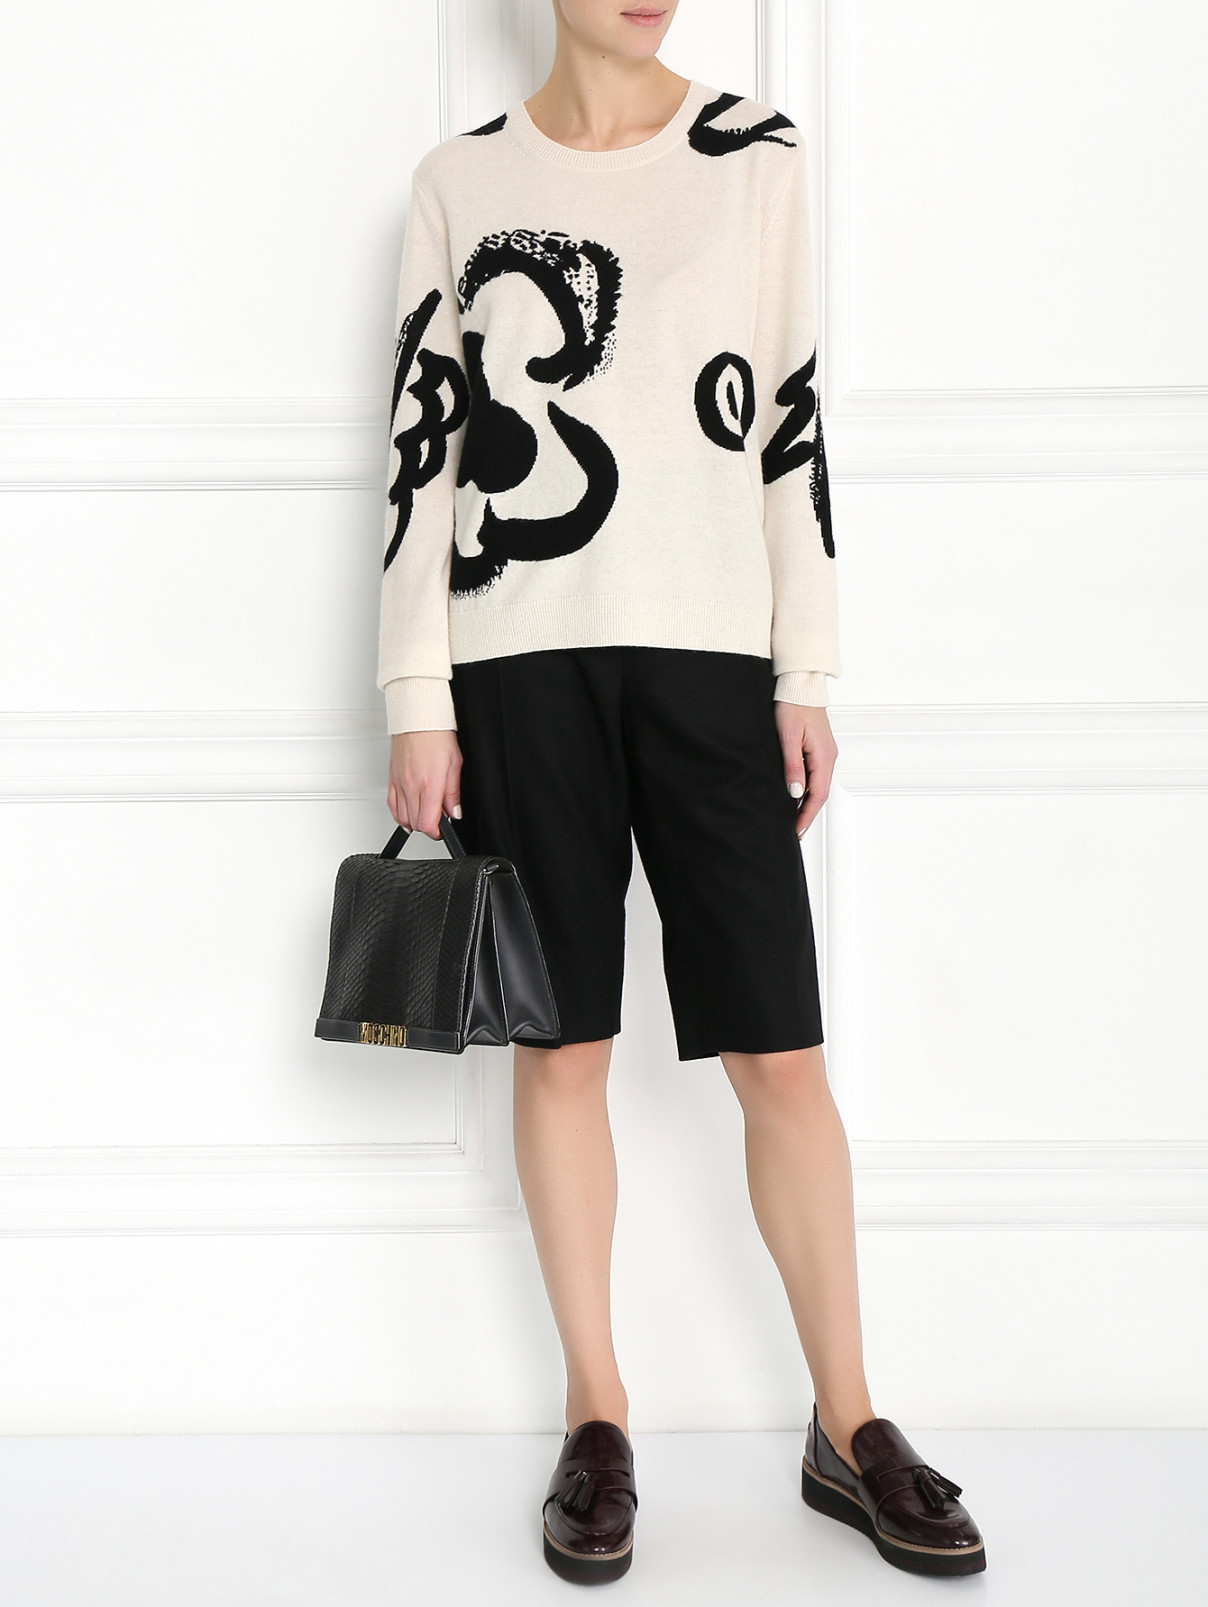 Шорты из шерсти с карманами Rue du Mail  –  Модель Общий вид  – Цвет:  Черный